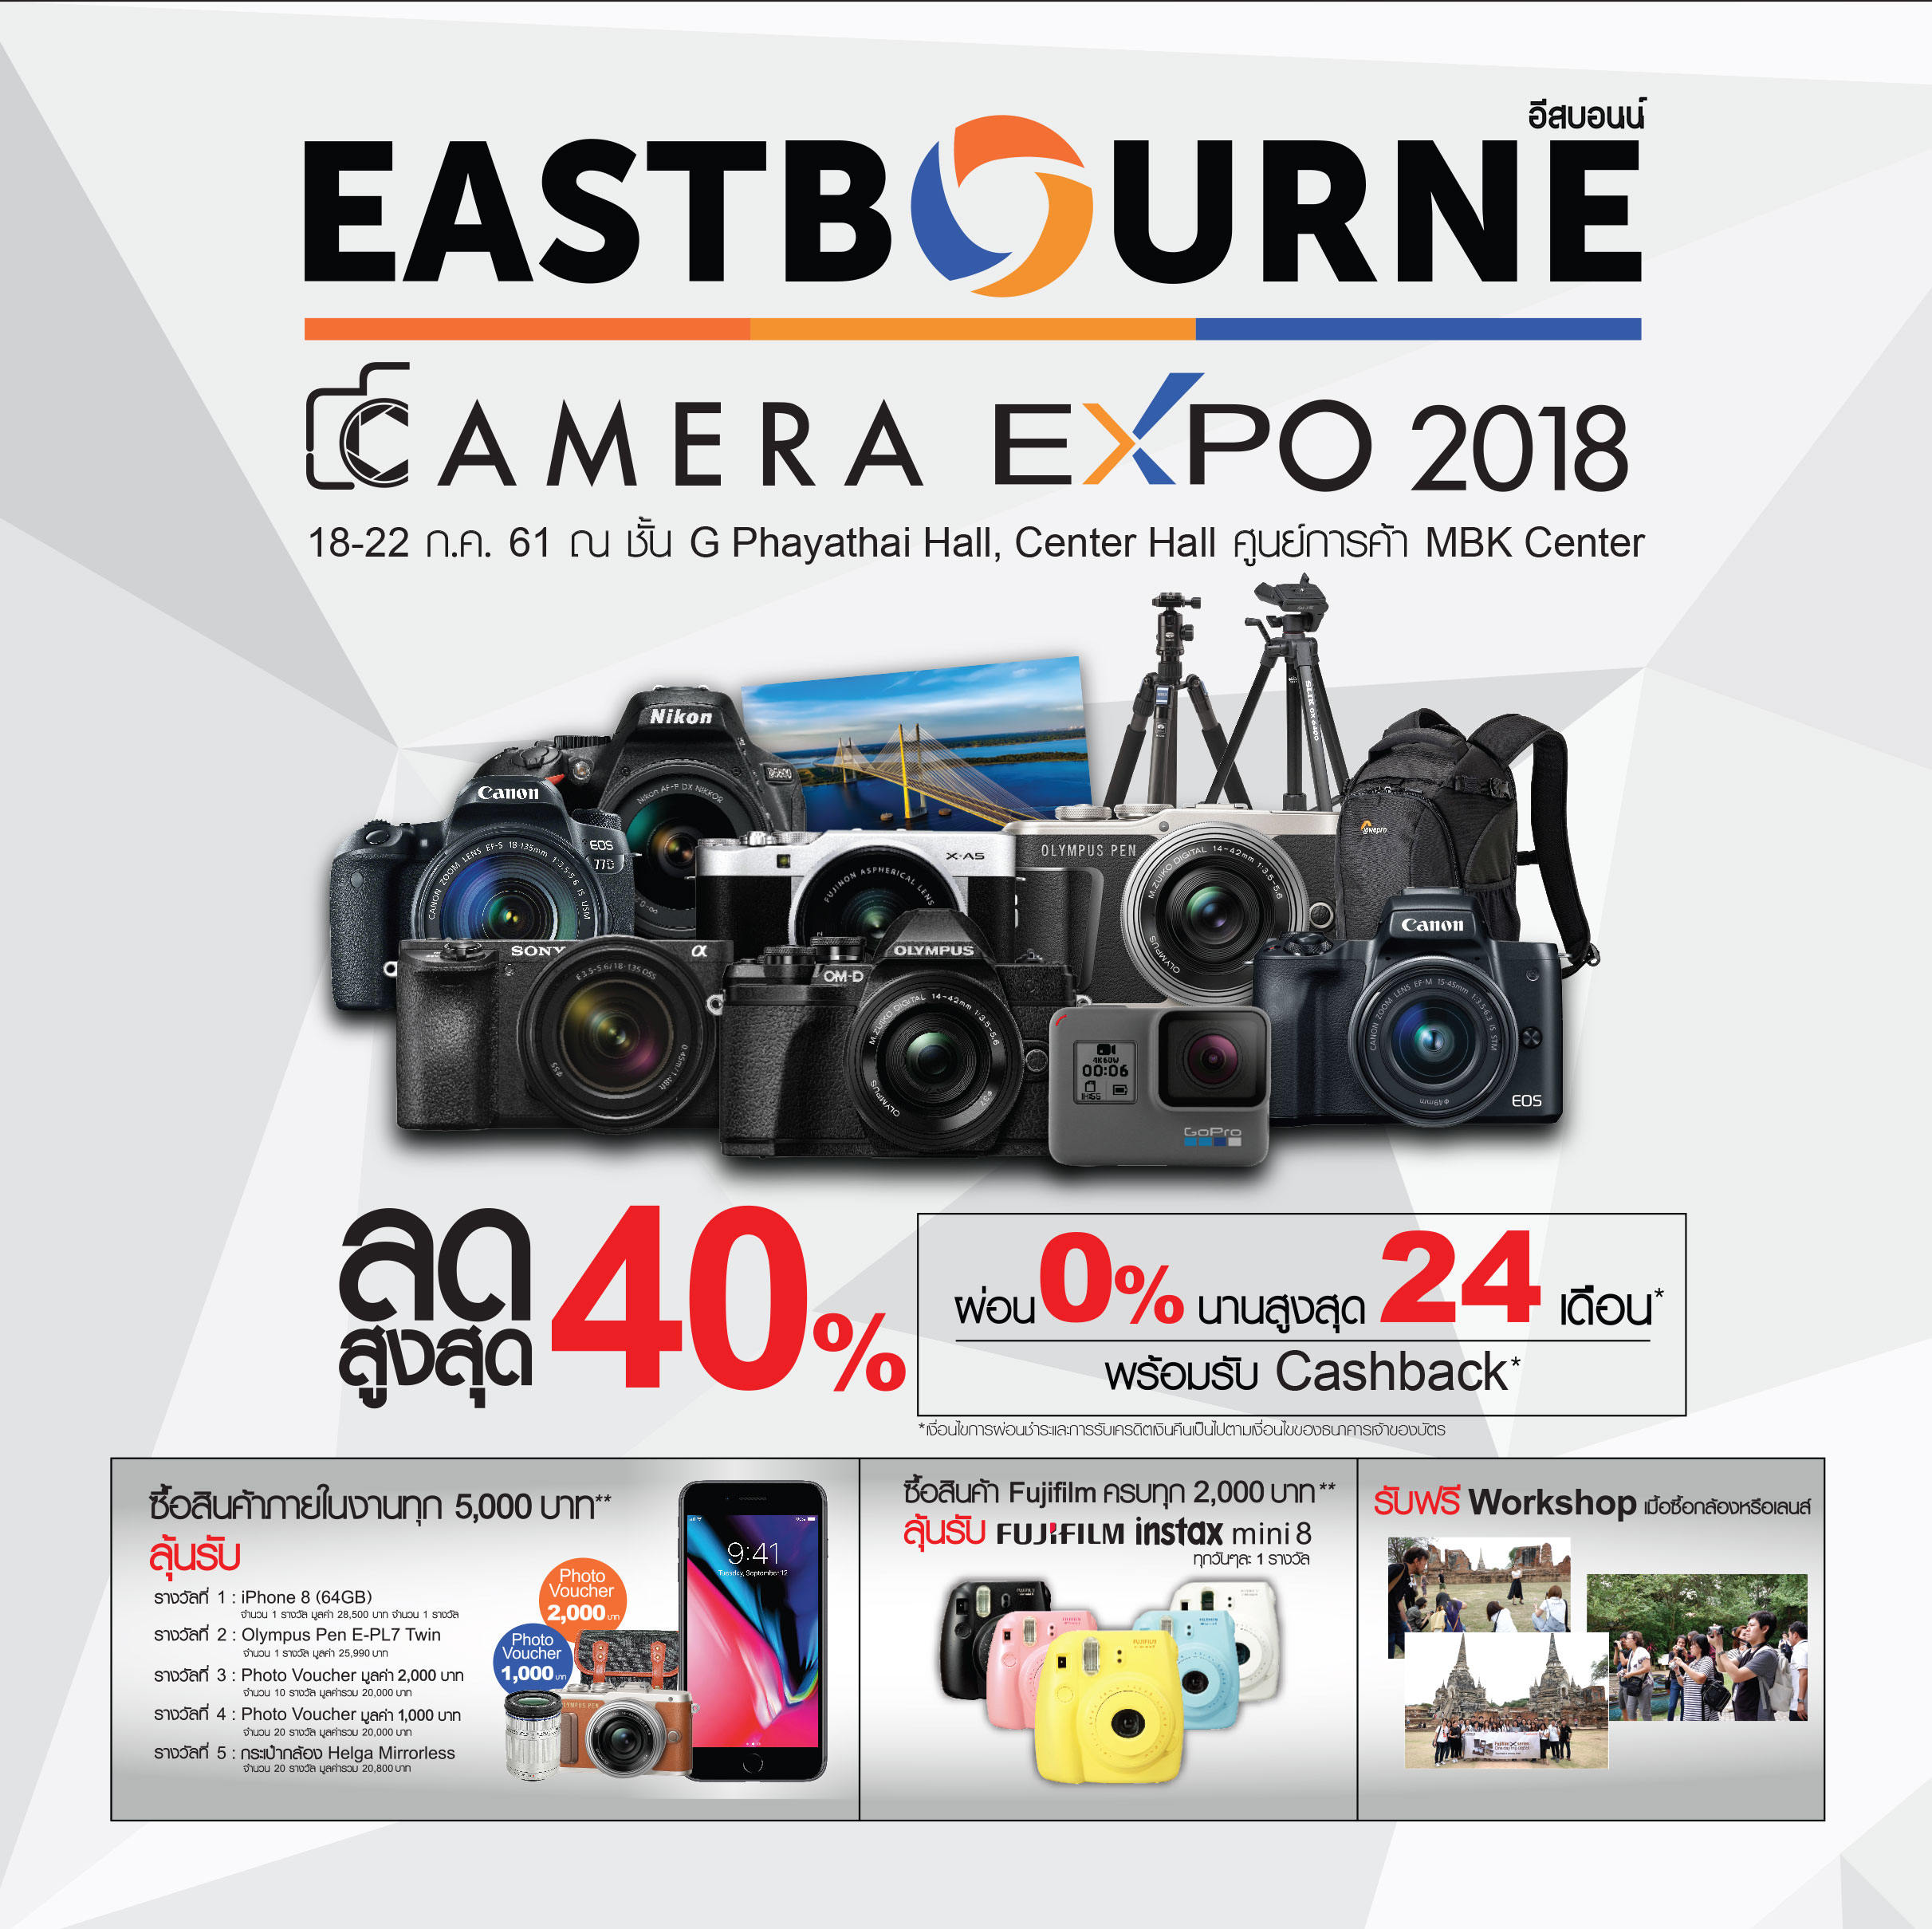 Eastbourne Camera Expo 2018